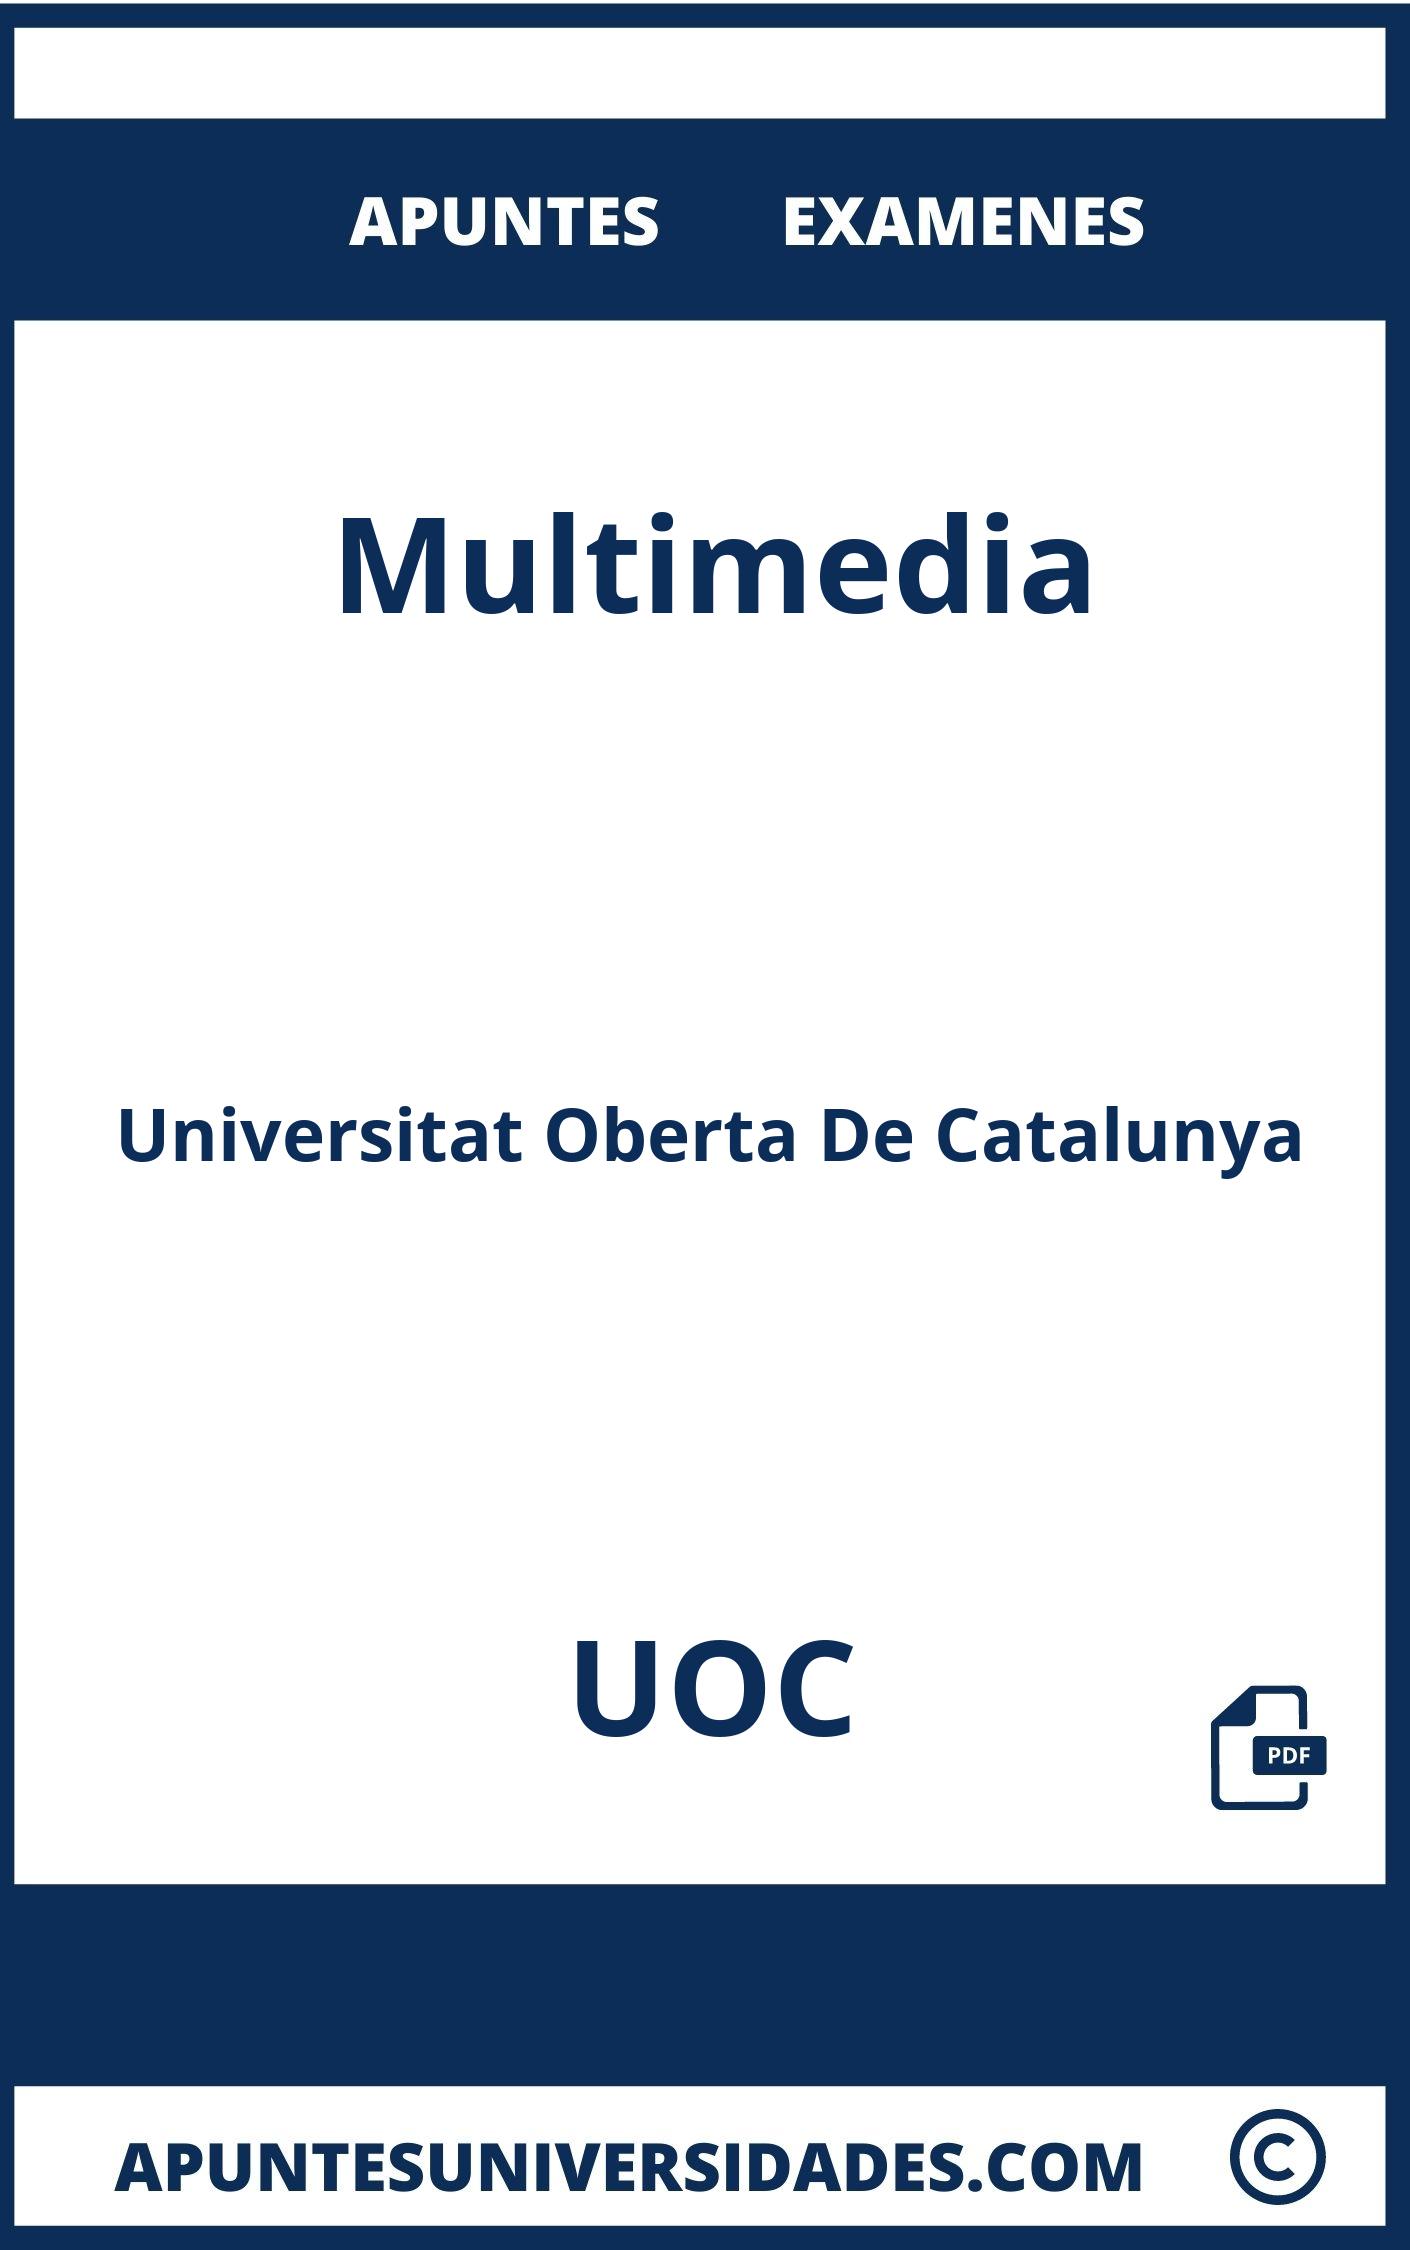 Apuntes Examenes Multimedia UOC